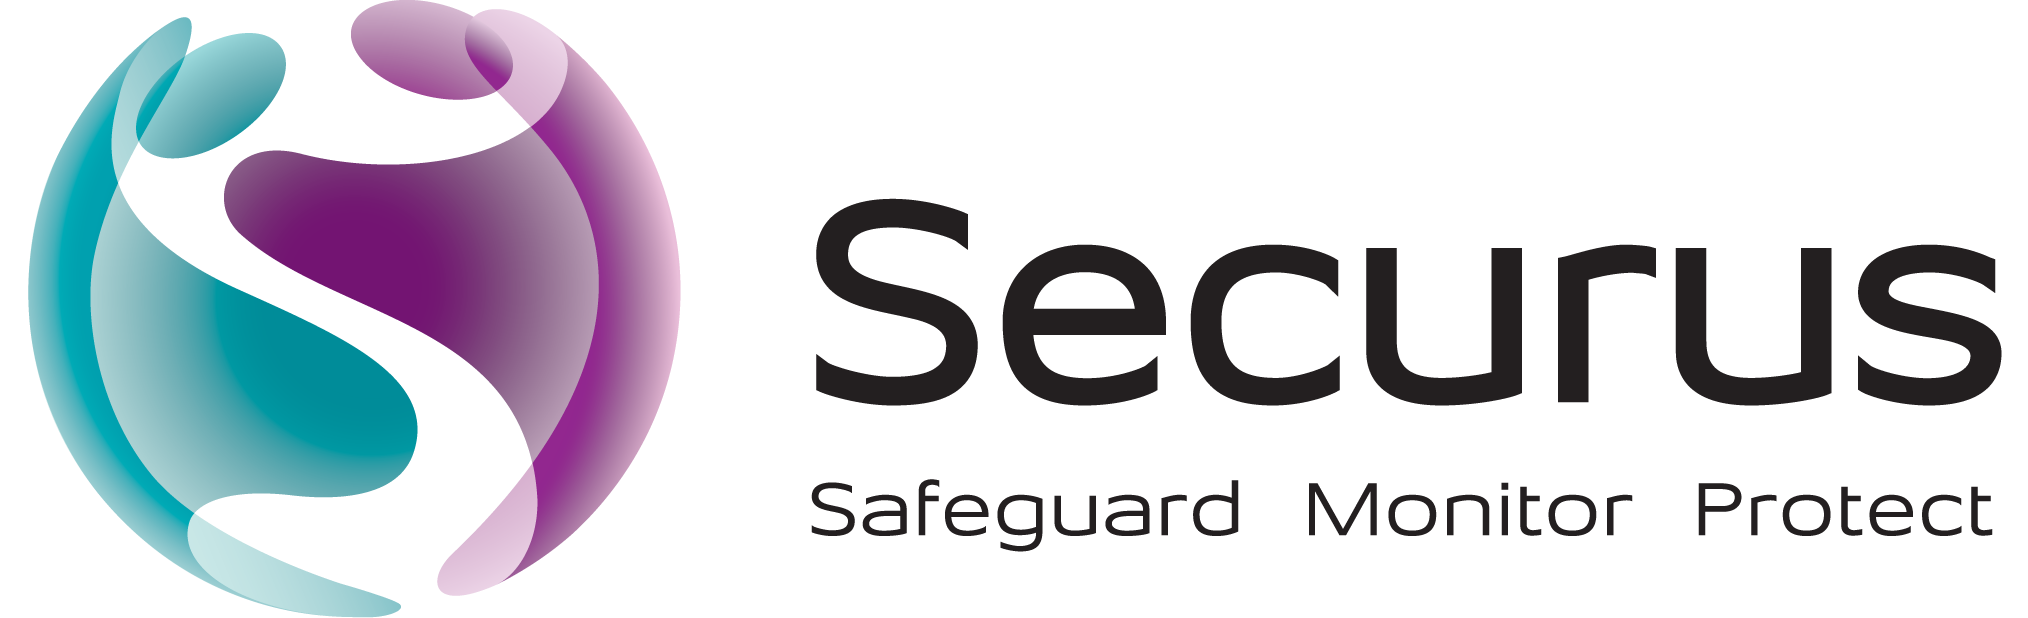 Securus logo